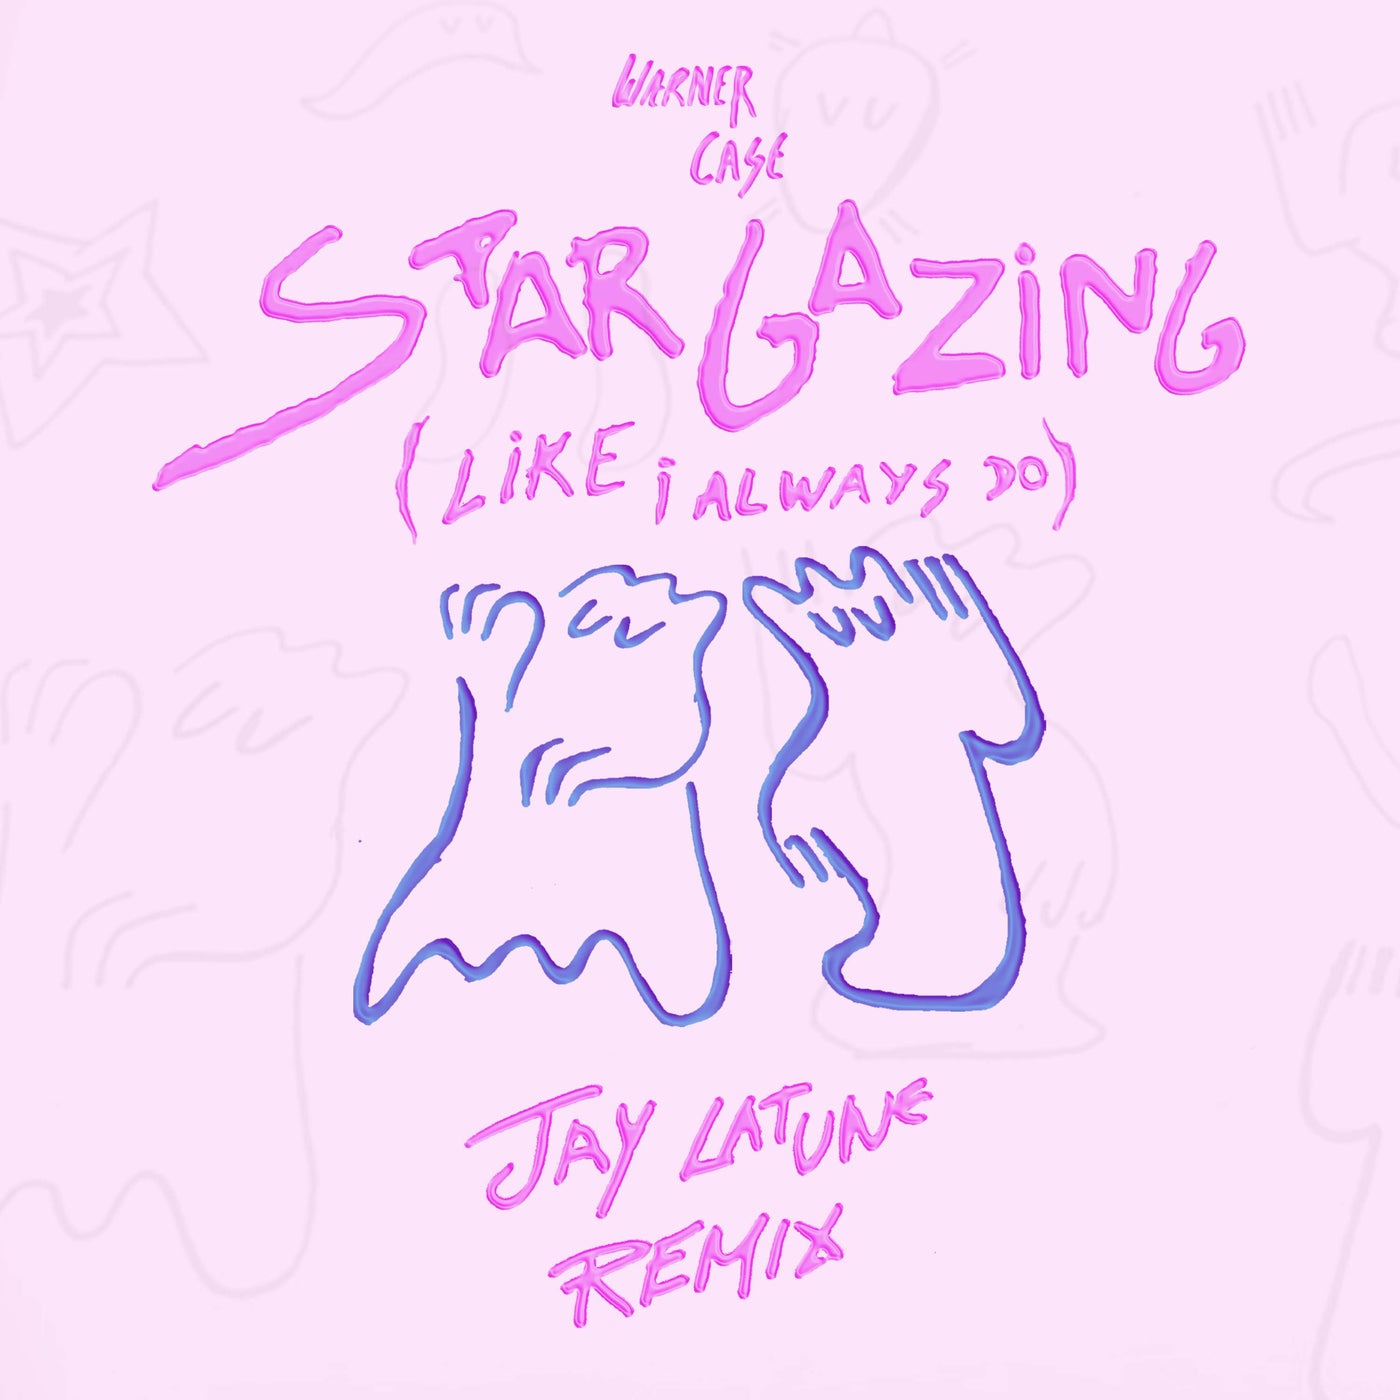 stargazing (like i always do) (Jay Latune Remix)